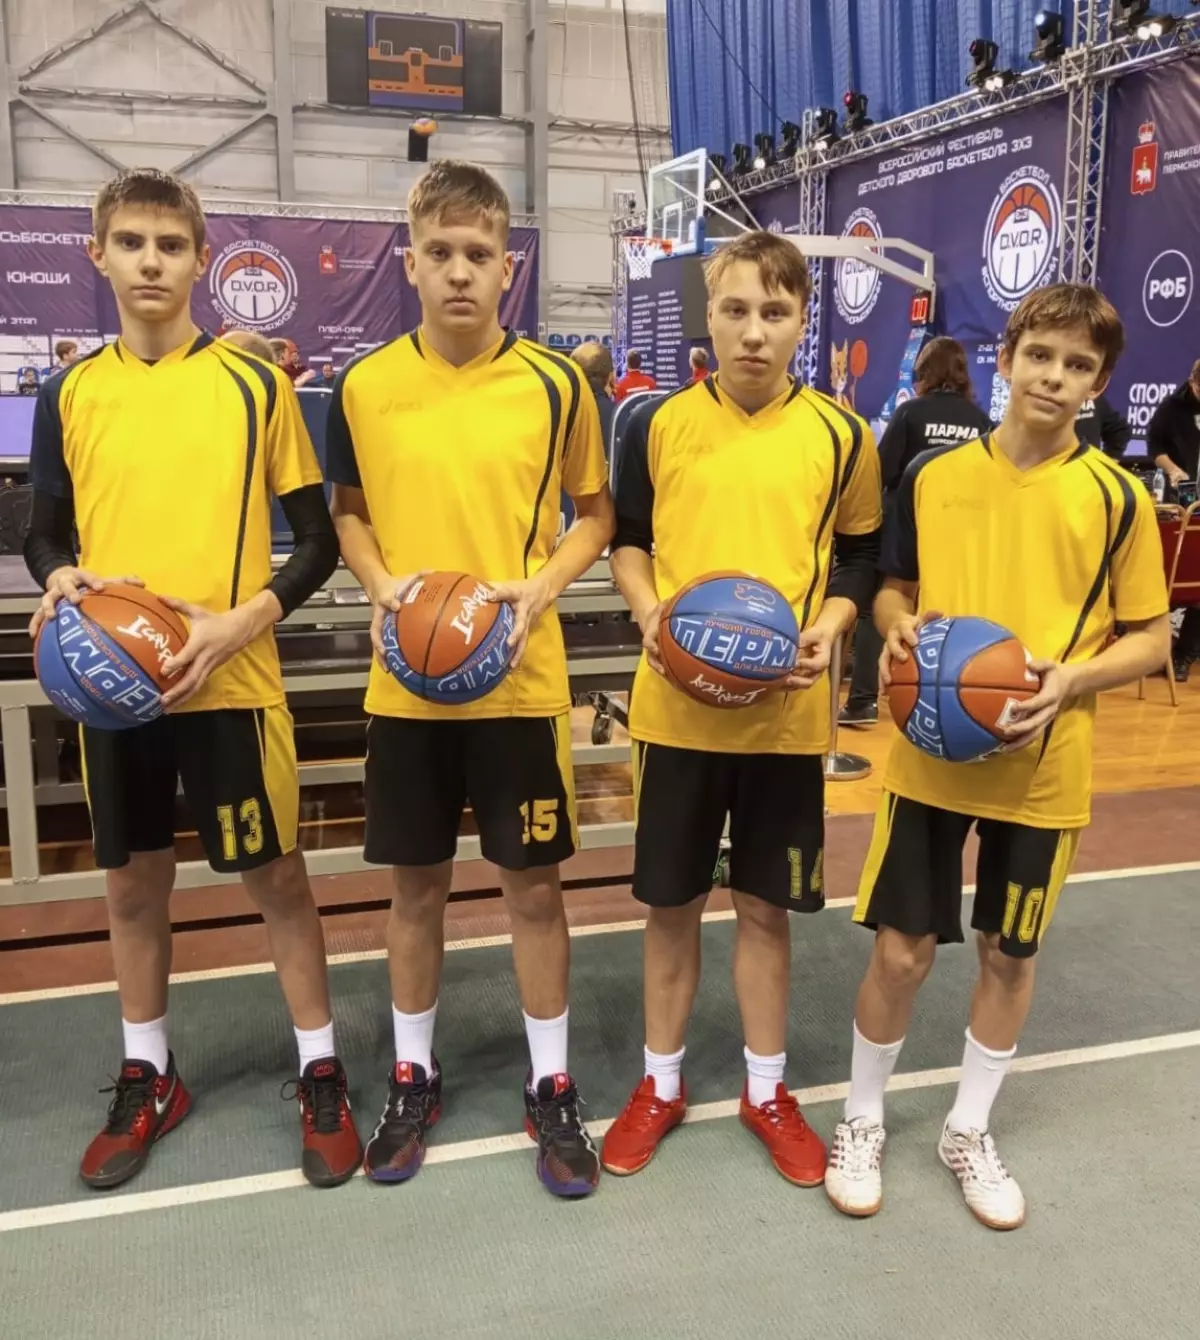 Хвойнинские баскетболисты в составе сборной области выступили в финале Всероссийского фестиваля дворового баскетбола 3х3